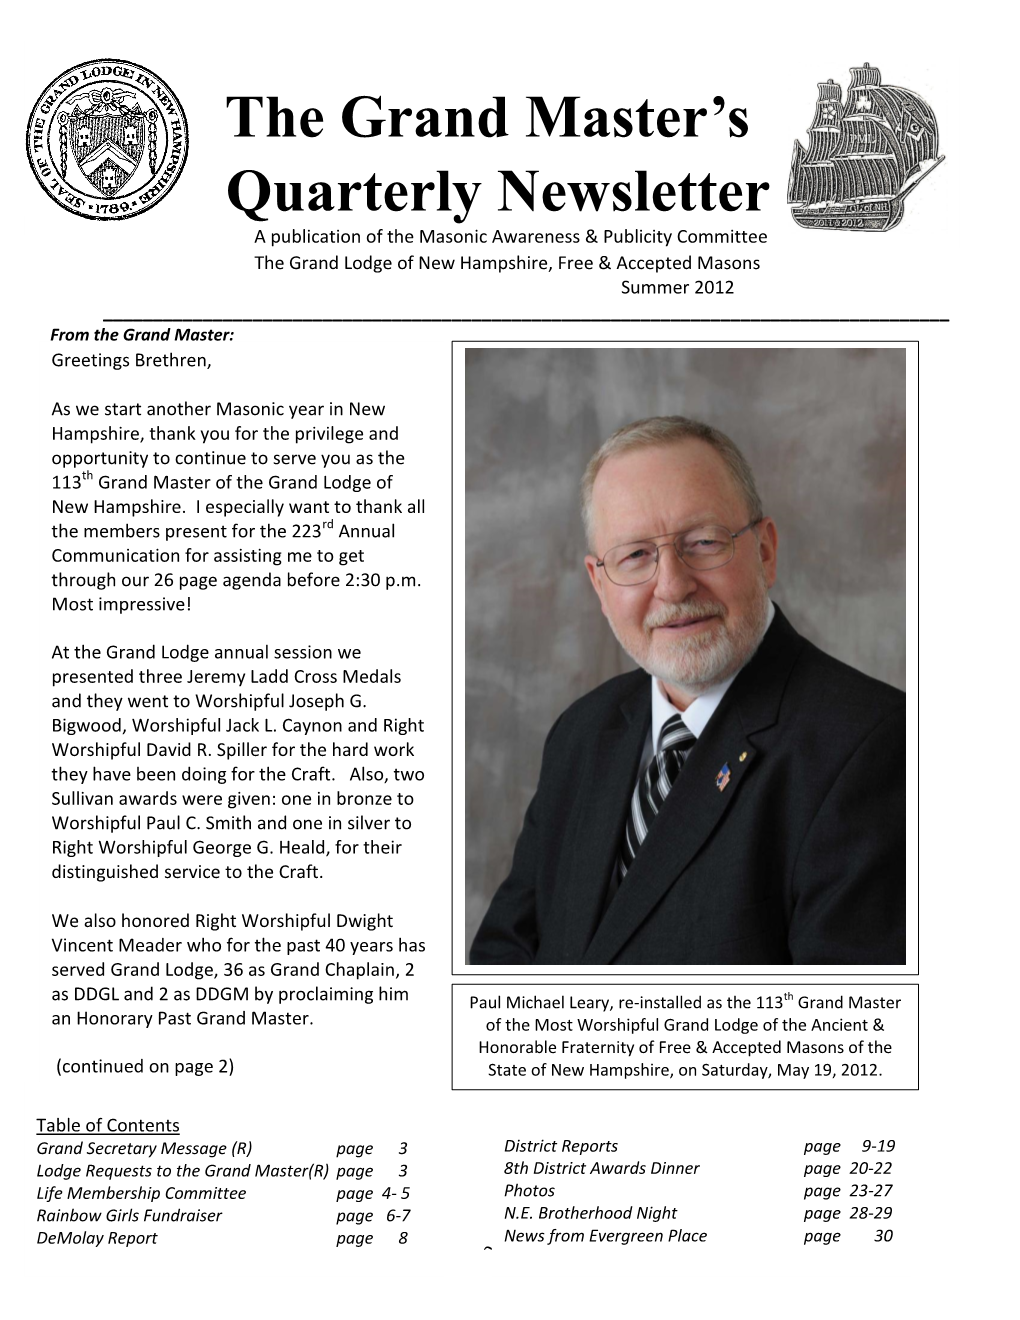 The Grand Master's Quarterly Newsletter